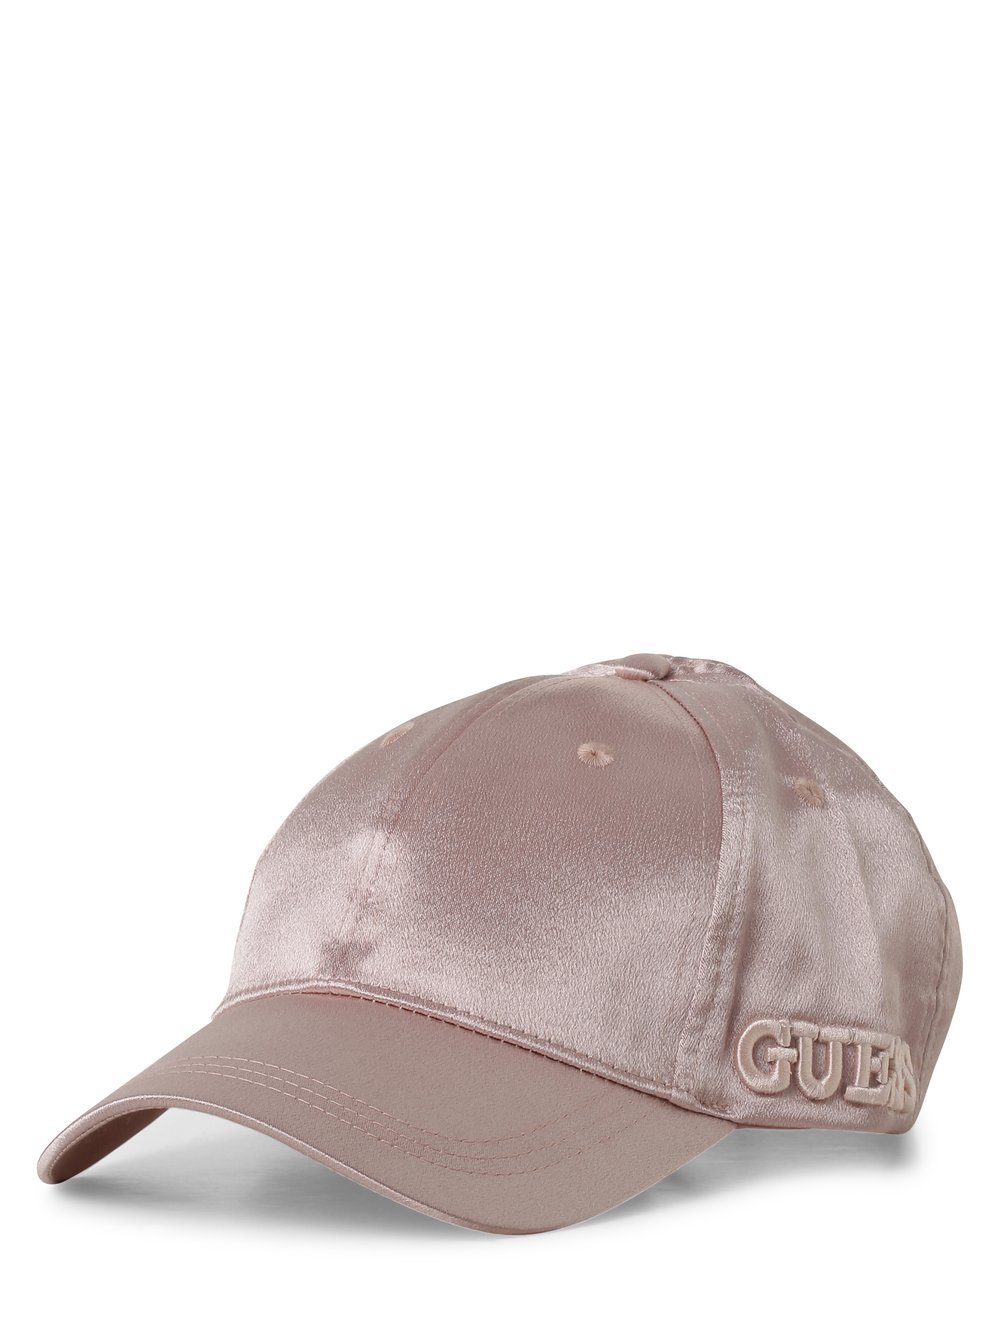 GUESS - Damska czapka z daszkiem, różowy Guess